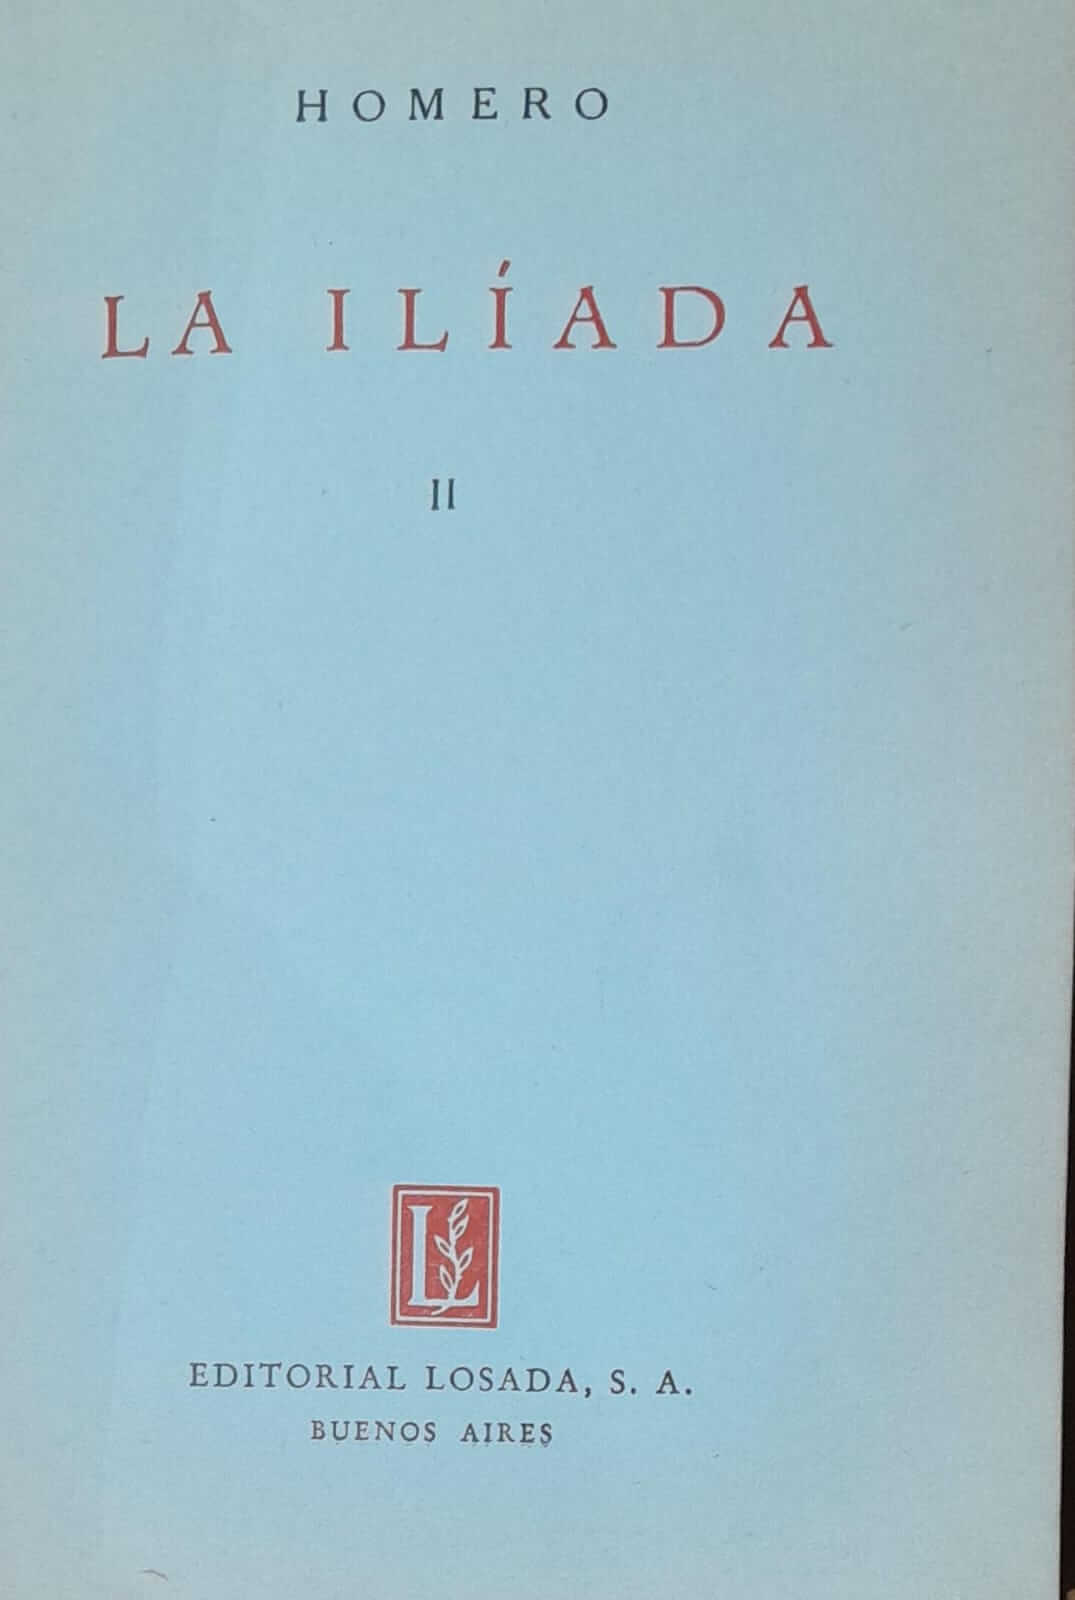 La Iliada II